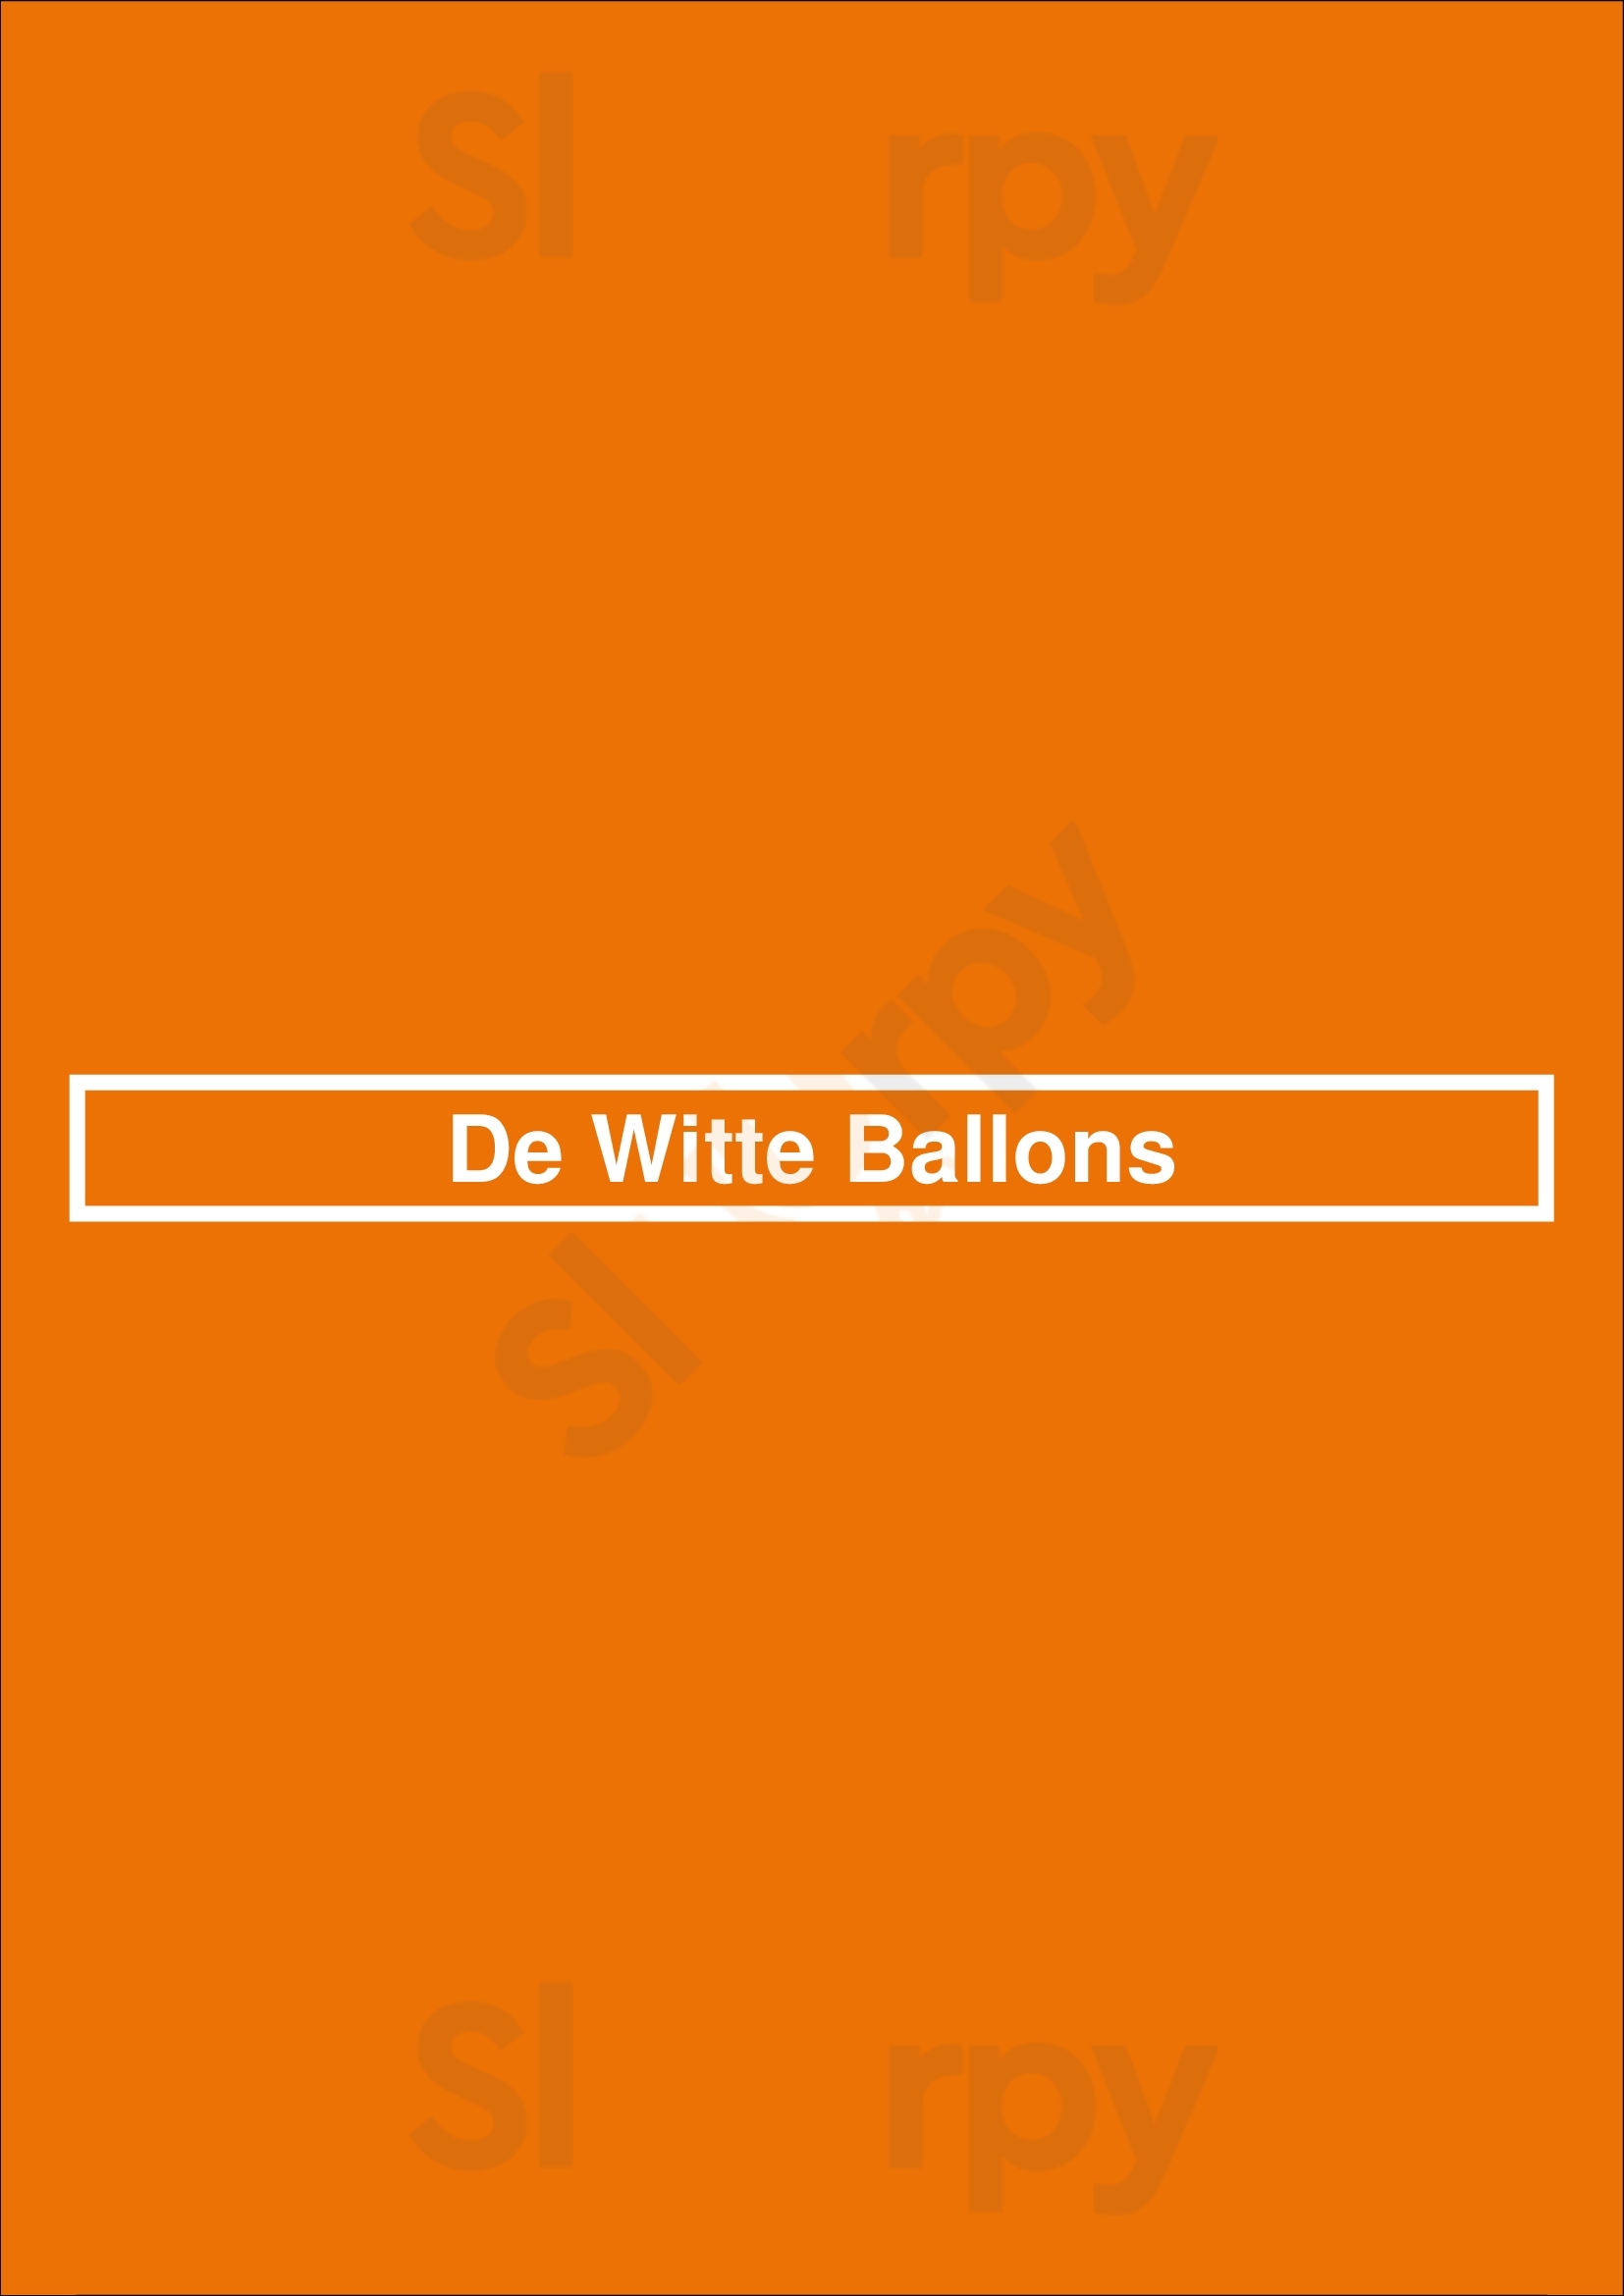 De Witte Ballons Utrecht Menu - 1